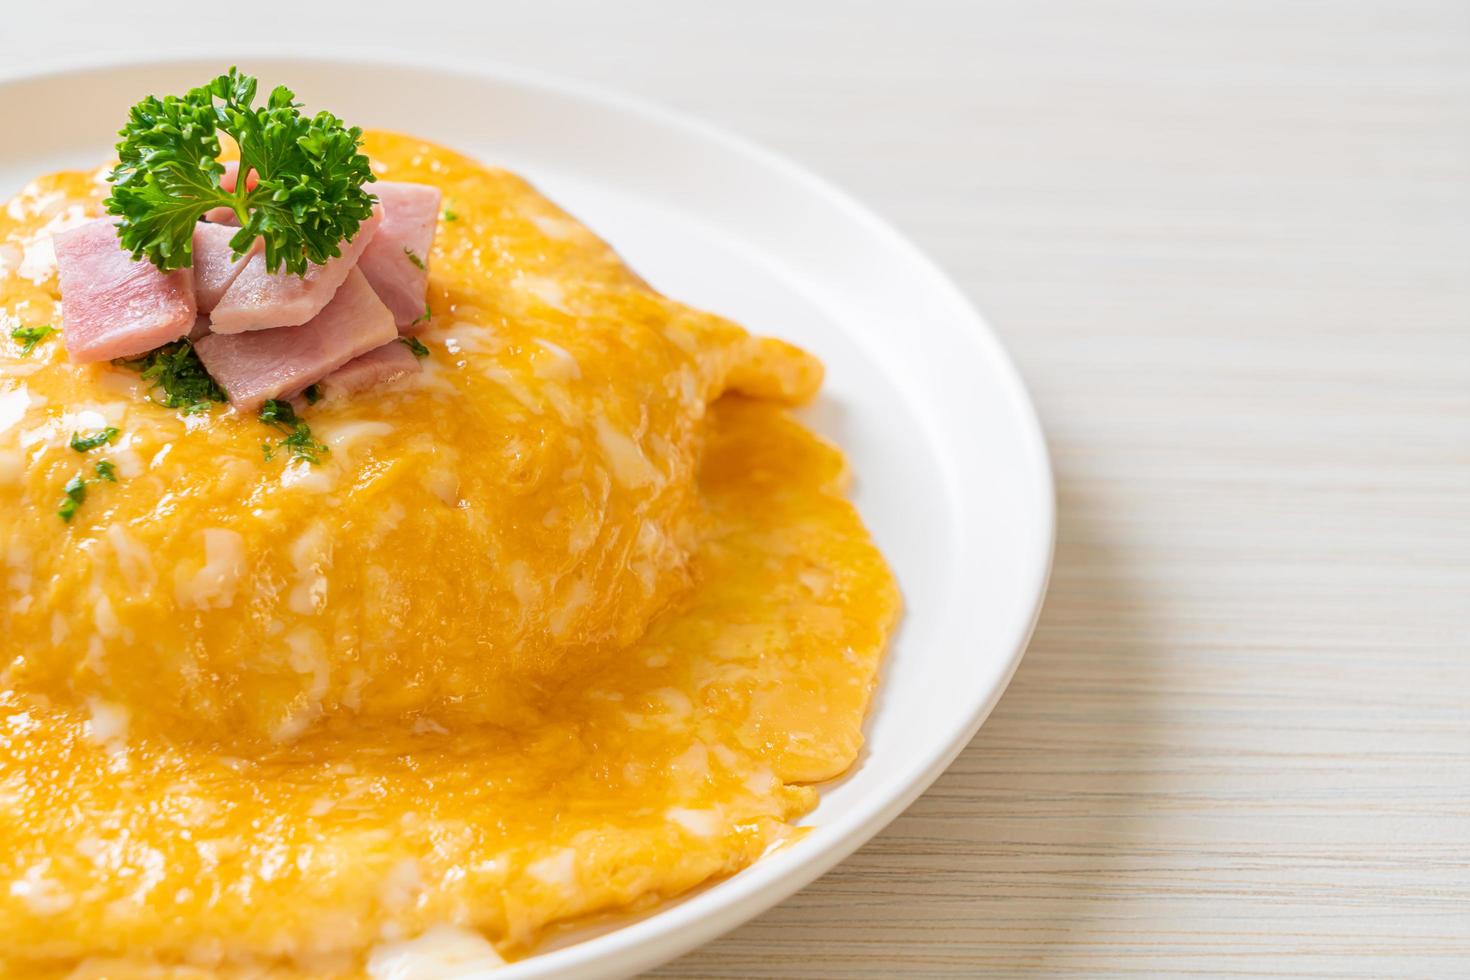 romige omelet met ham op rijst foto